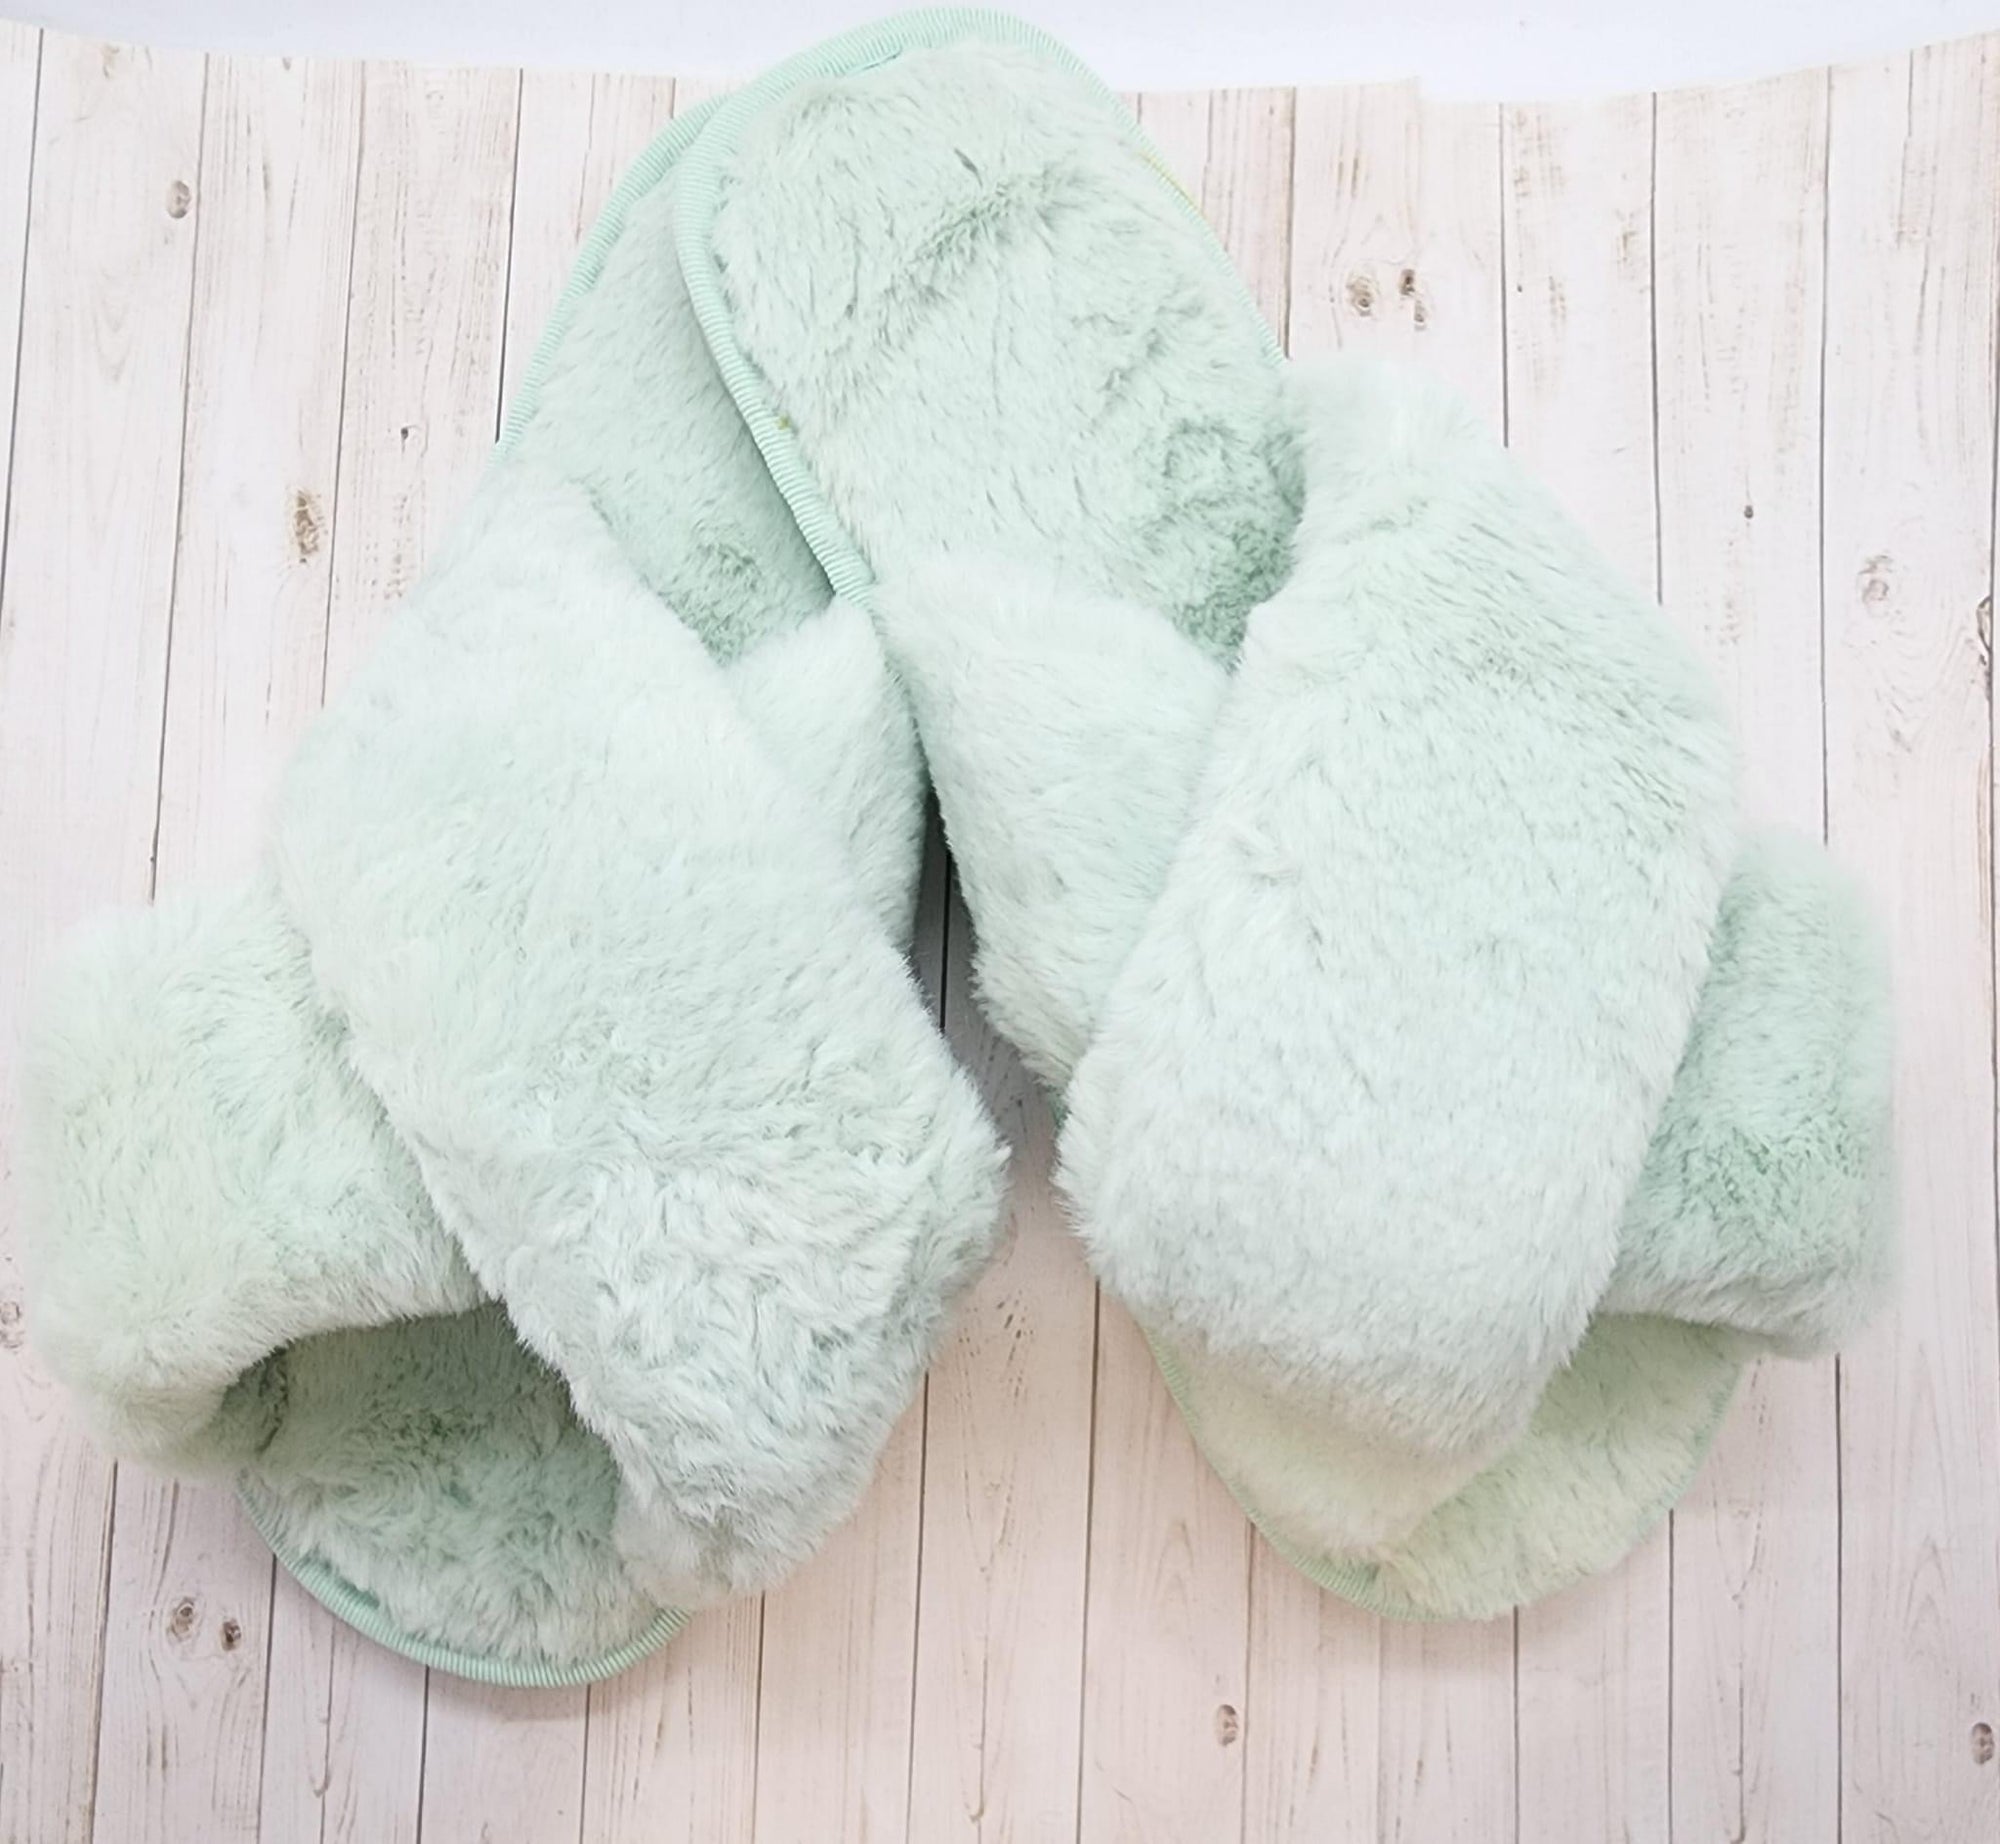 Fluffy Women’s Slippers